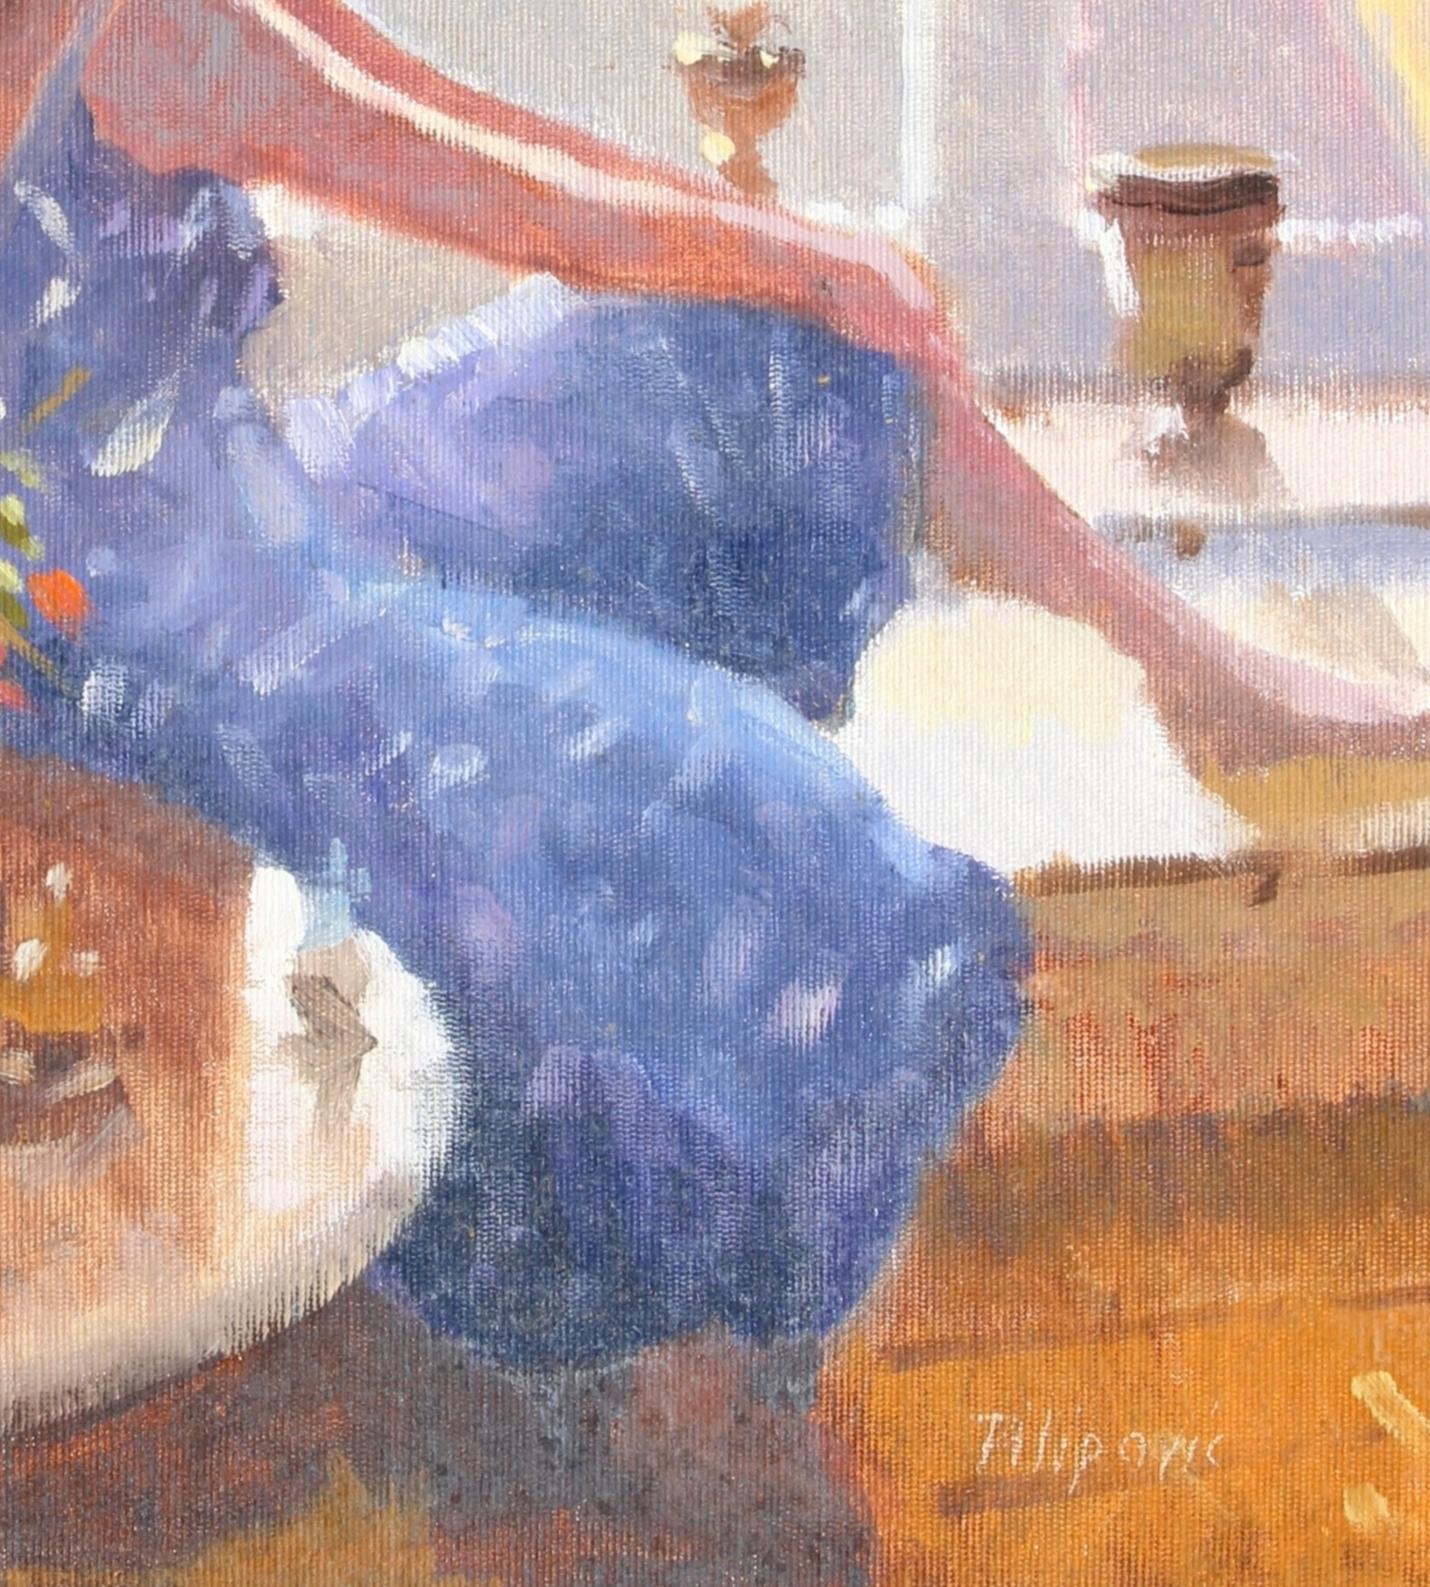 Ein schönes impressionistisches Öl auf Leinwand von Zlatan Pilipovic, das eine Dame im Atelier des Künstlers darstellt. Das Werk ist sehr gut gemalt, mit einem wunderbaren, für den Künstler typischen, gedämpften Licht. Ein herausragendes Beispiel